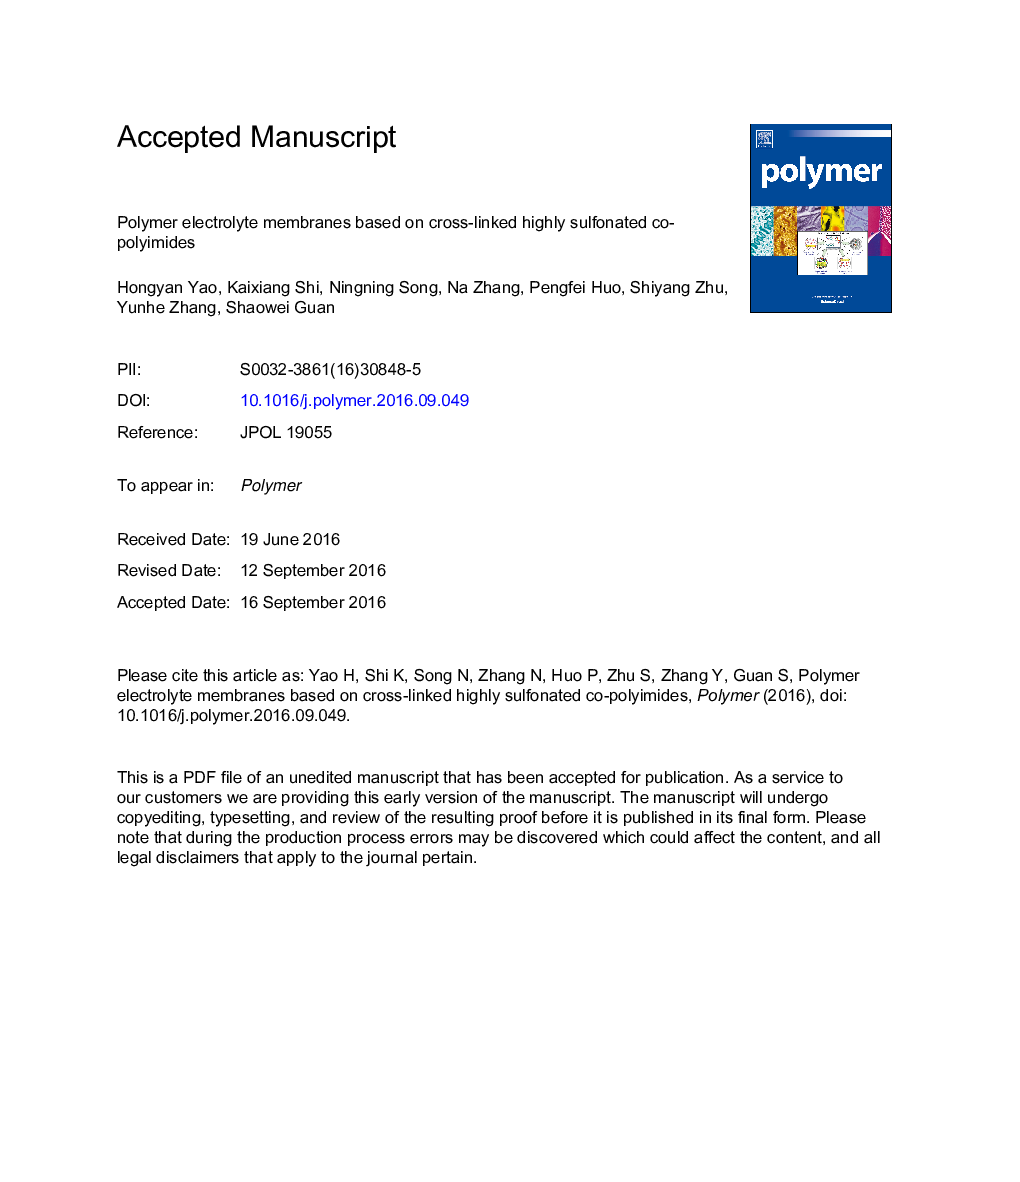 غشاء الکترولیتی پلیمر براساس ترکیبات پلی آمید بسیار سولفونیک متقاطع 